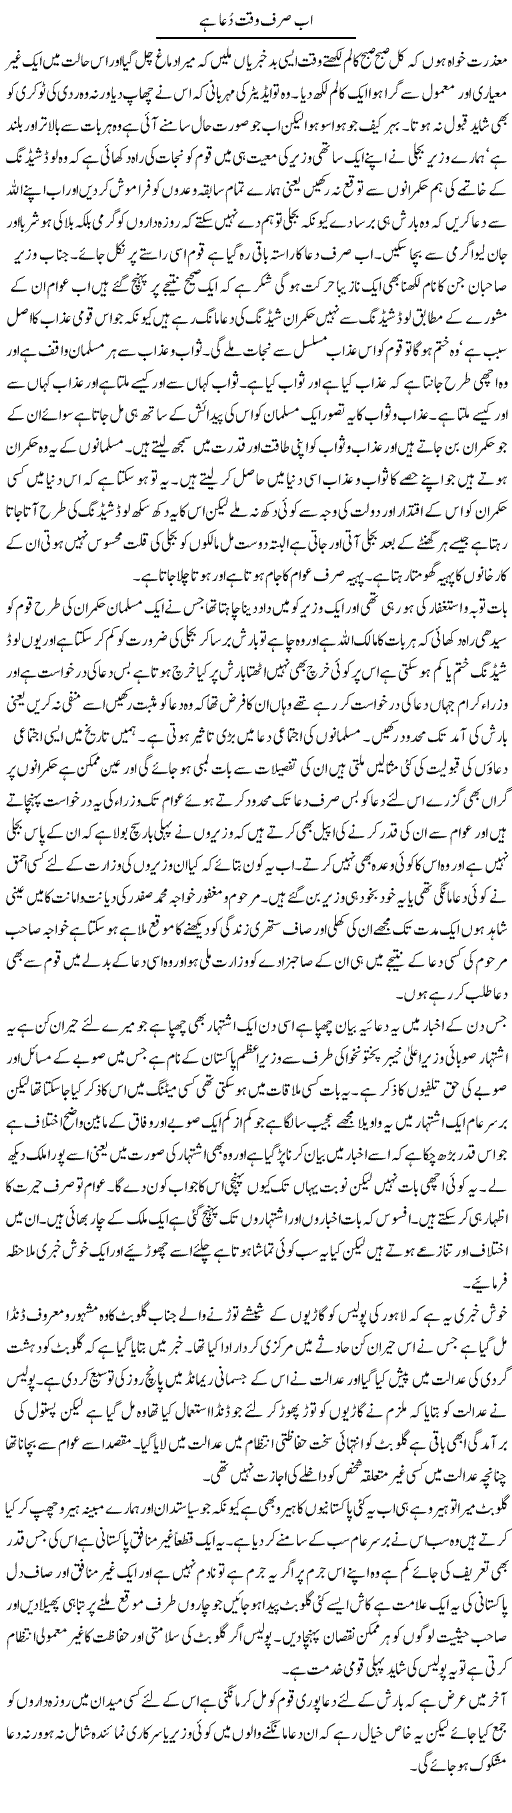 Ab Sirf Waqt e Dua Hai | Abdul Qadir Hassan | Daily Urdu Columns